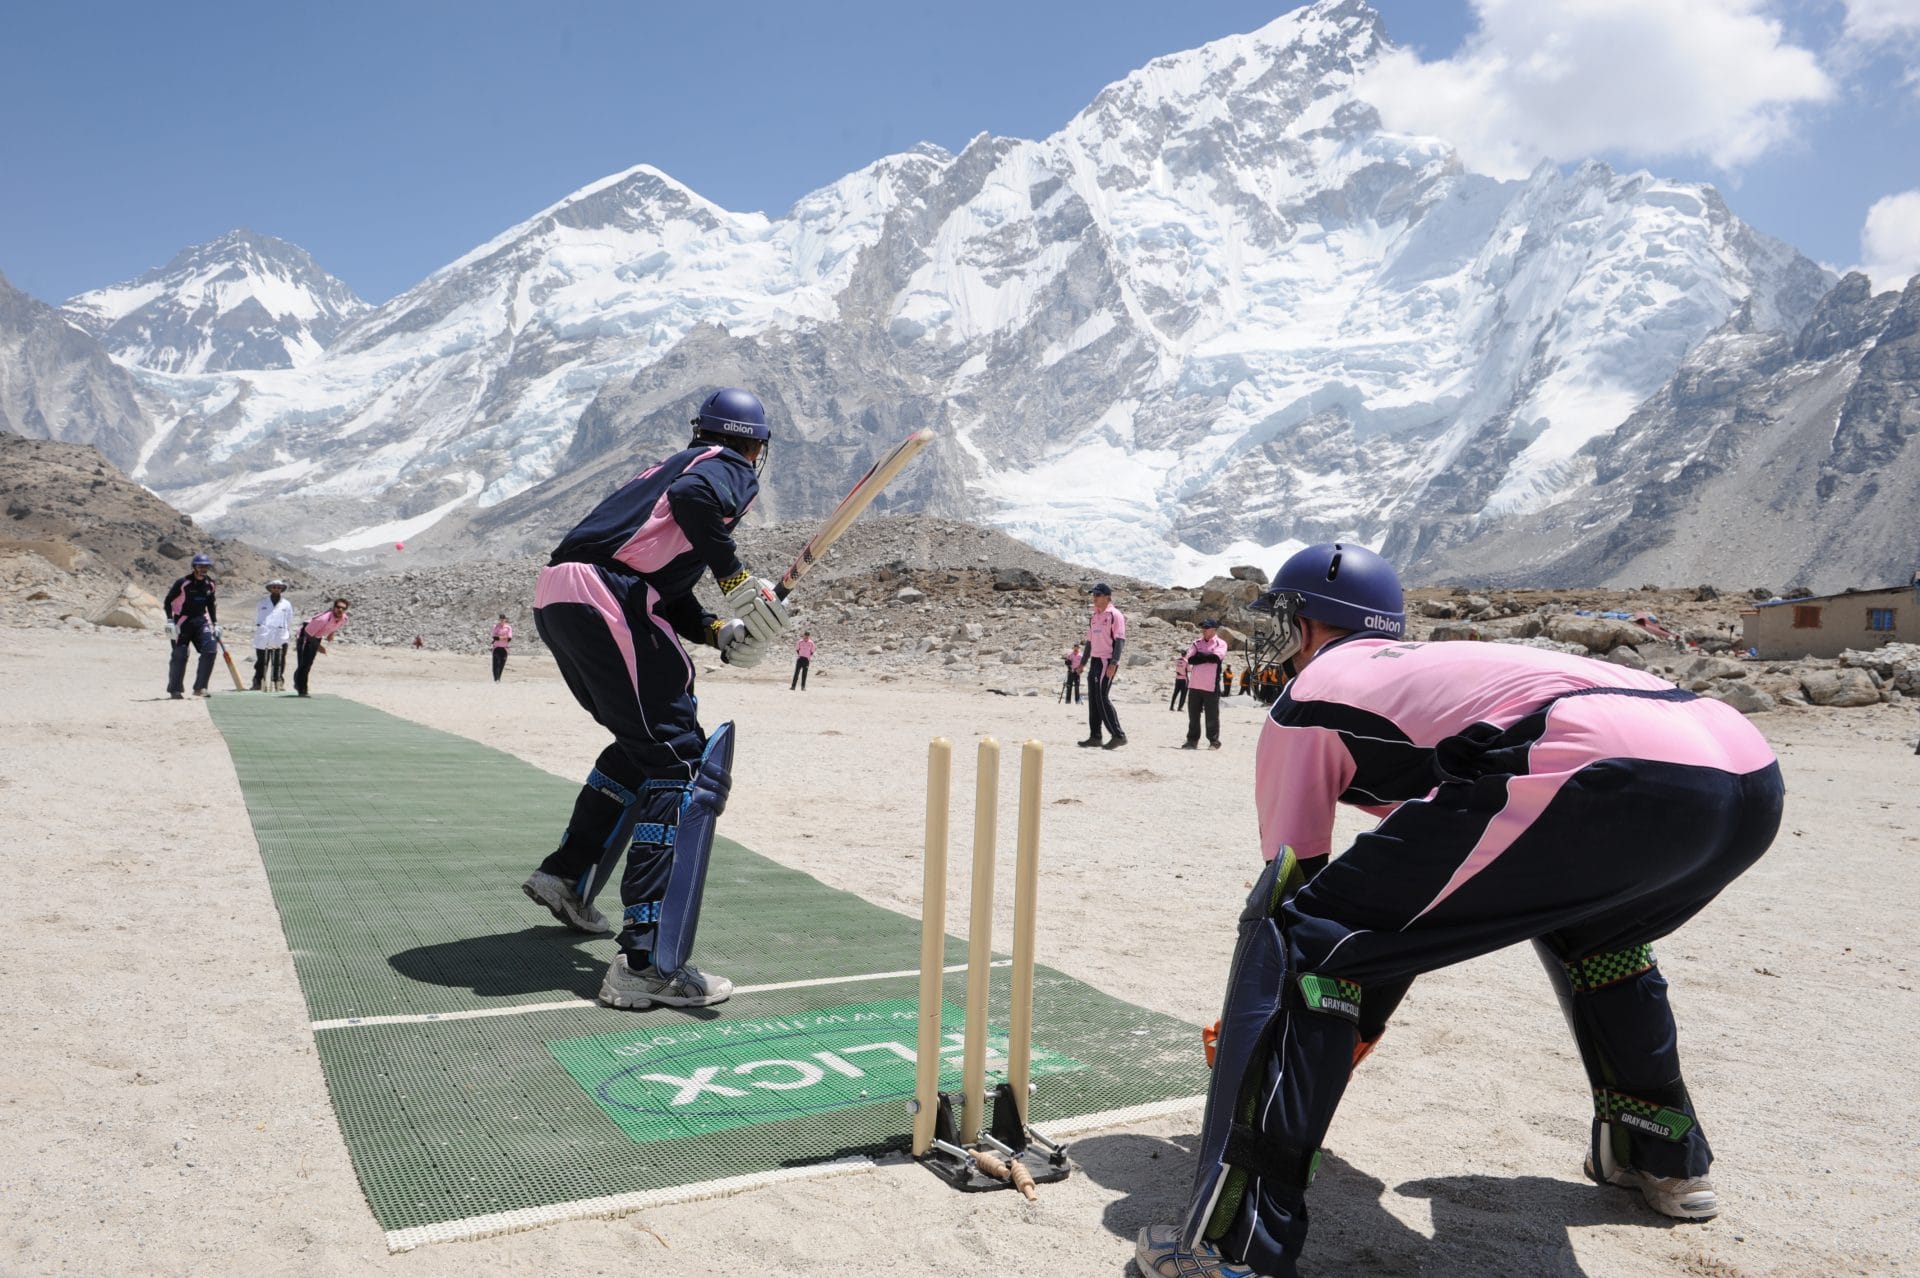 Cricket on Everest